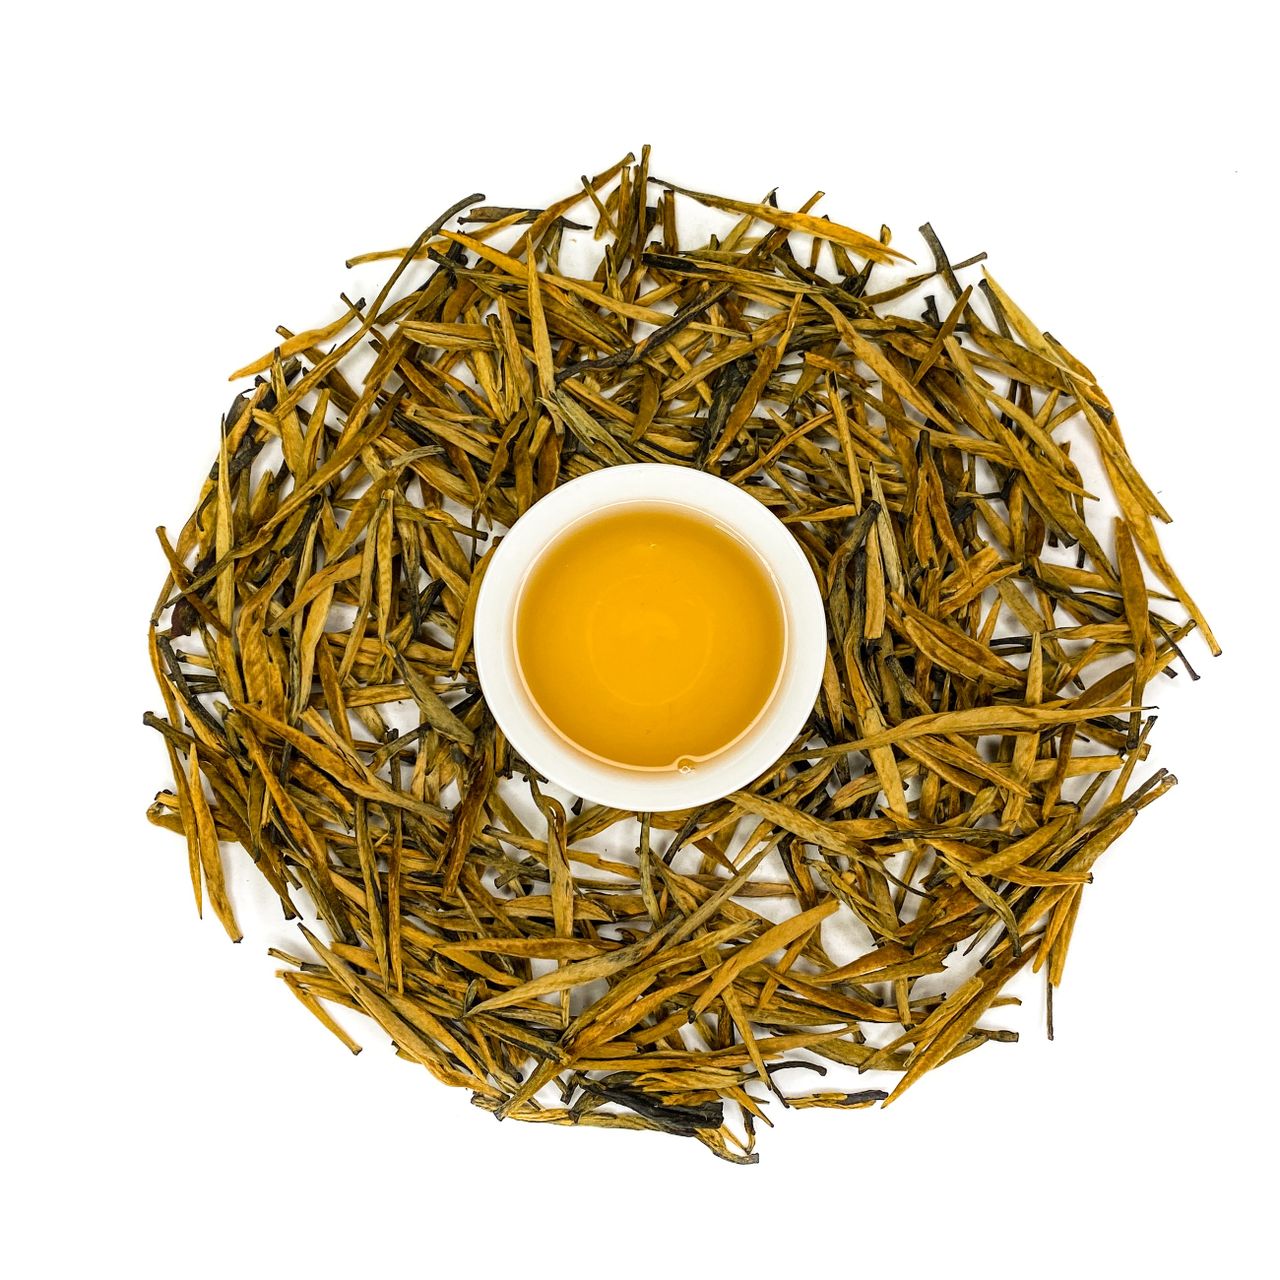 Китайский бодрящий чай. Дянь Хун золотые иглы. Золотые иглы чай. Китайский чай бодрящий. Бодрящий чай китайский в таблетках.